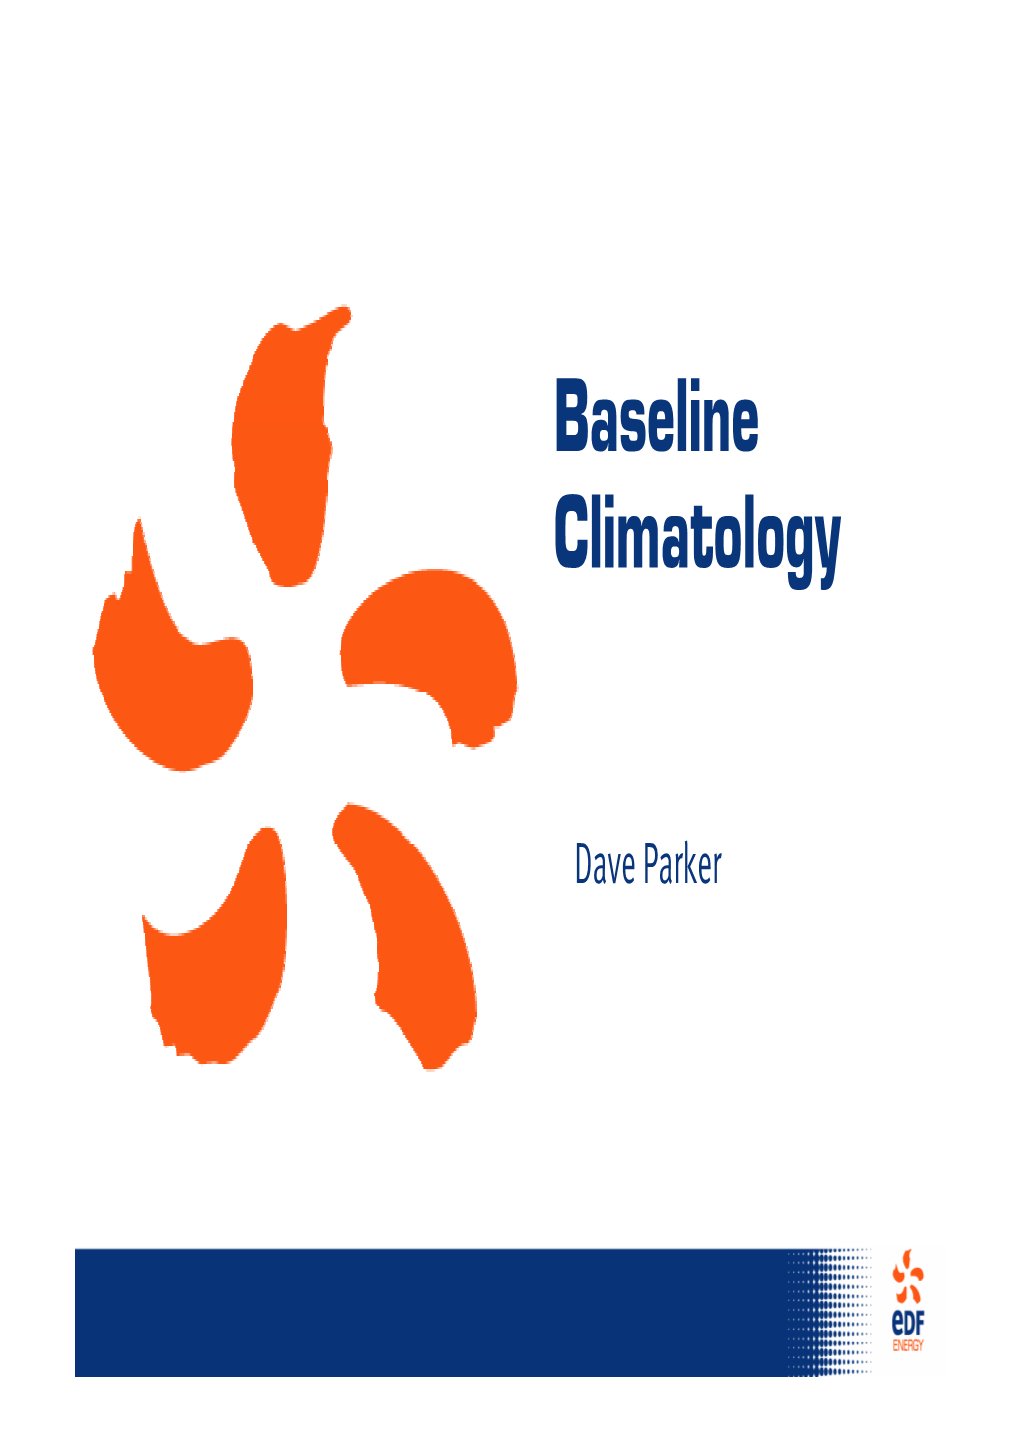 Baseline Climatology